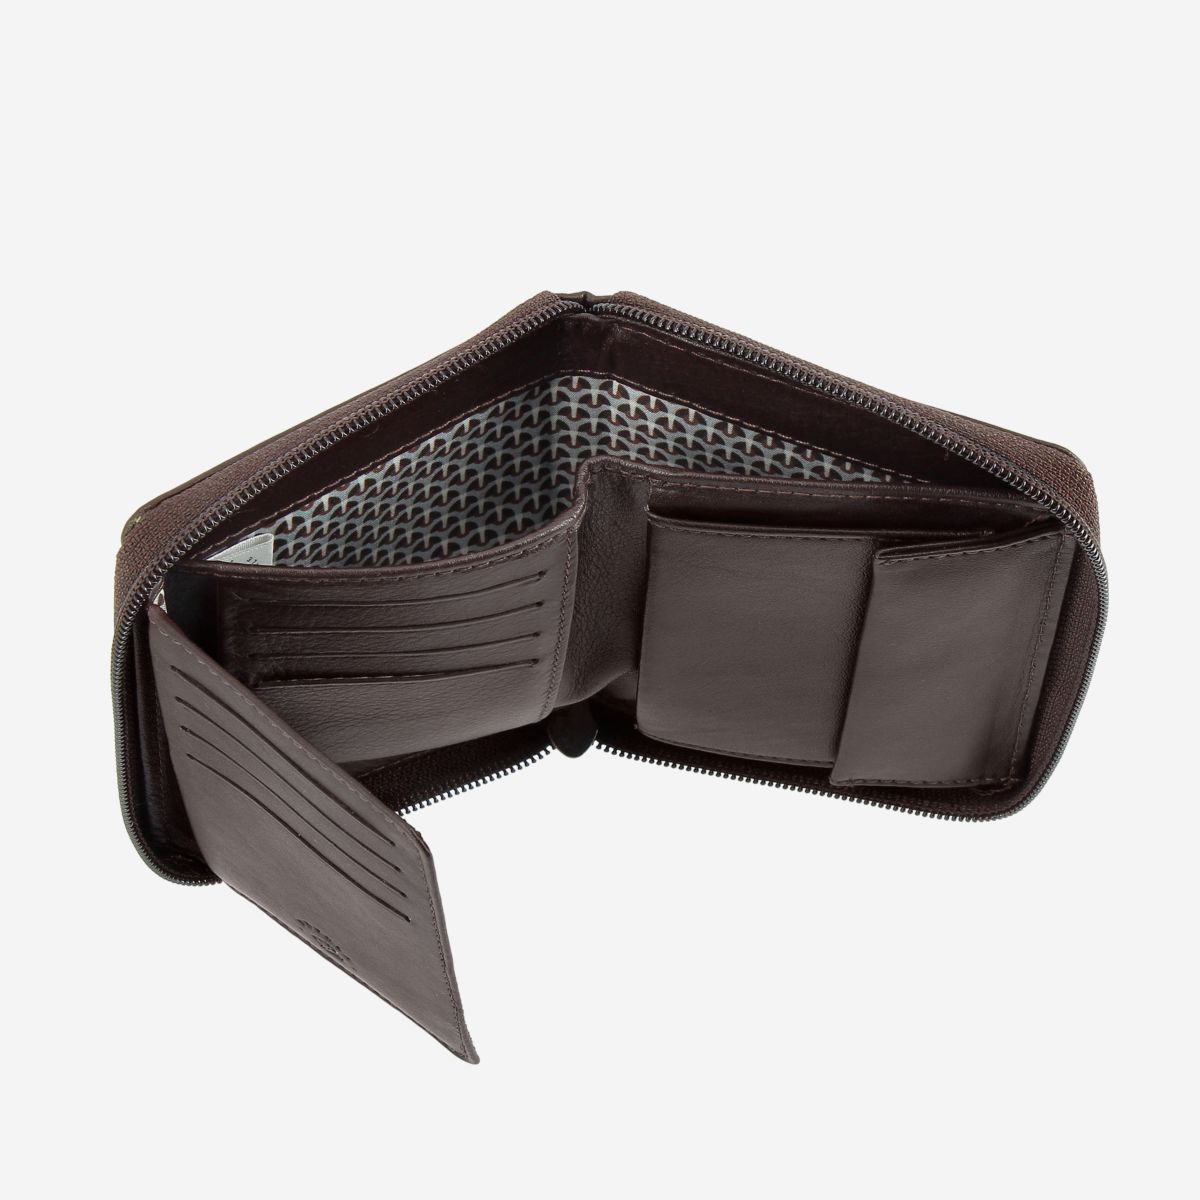 NUVOLA PELLE RFID Mens Leather Wallet with Zip - Dark Brown